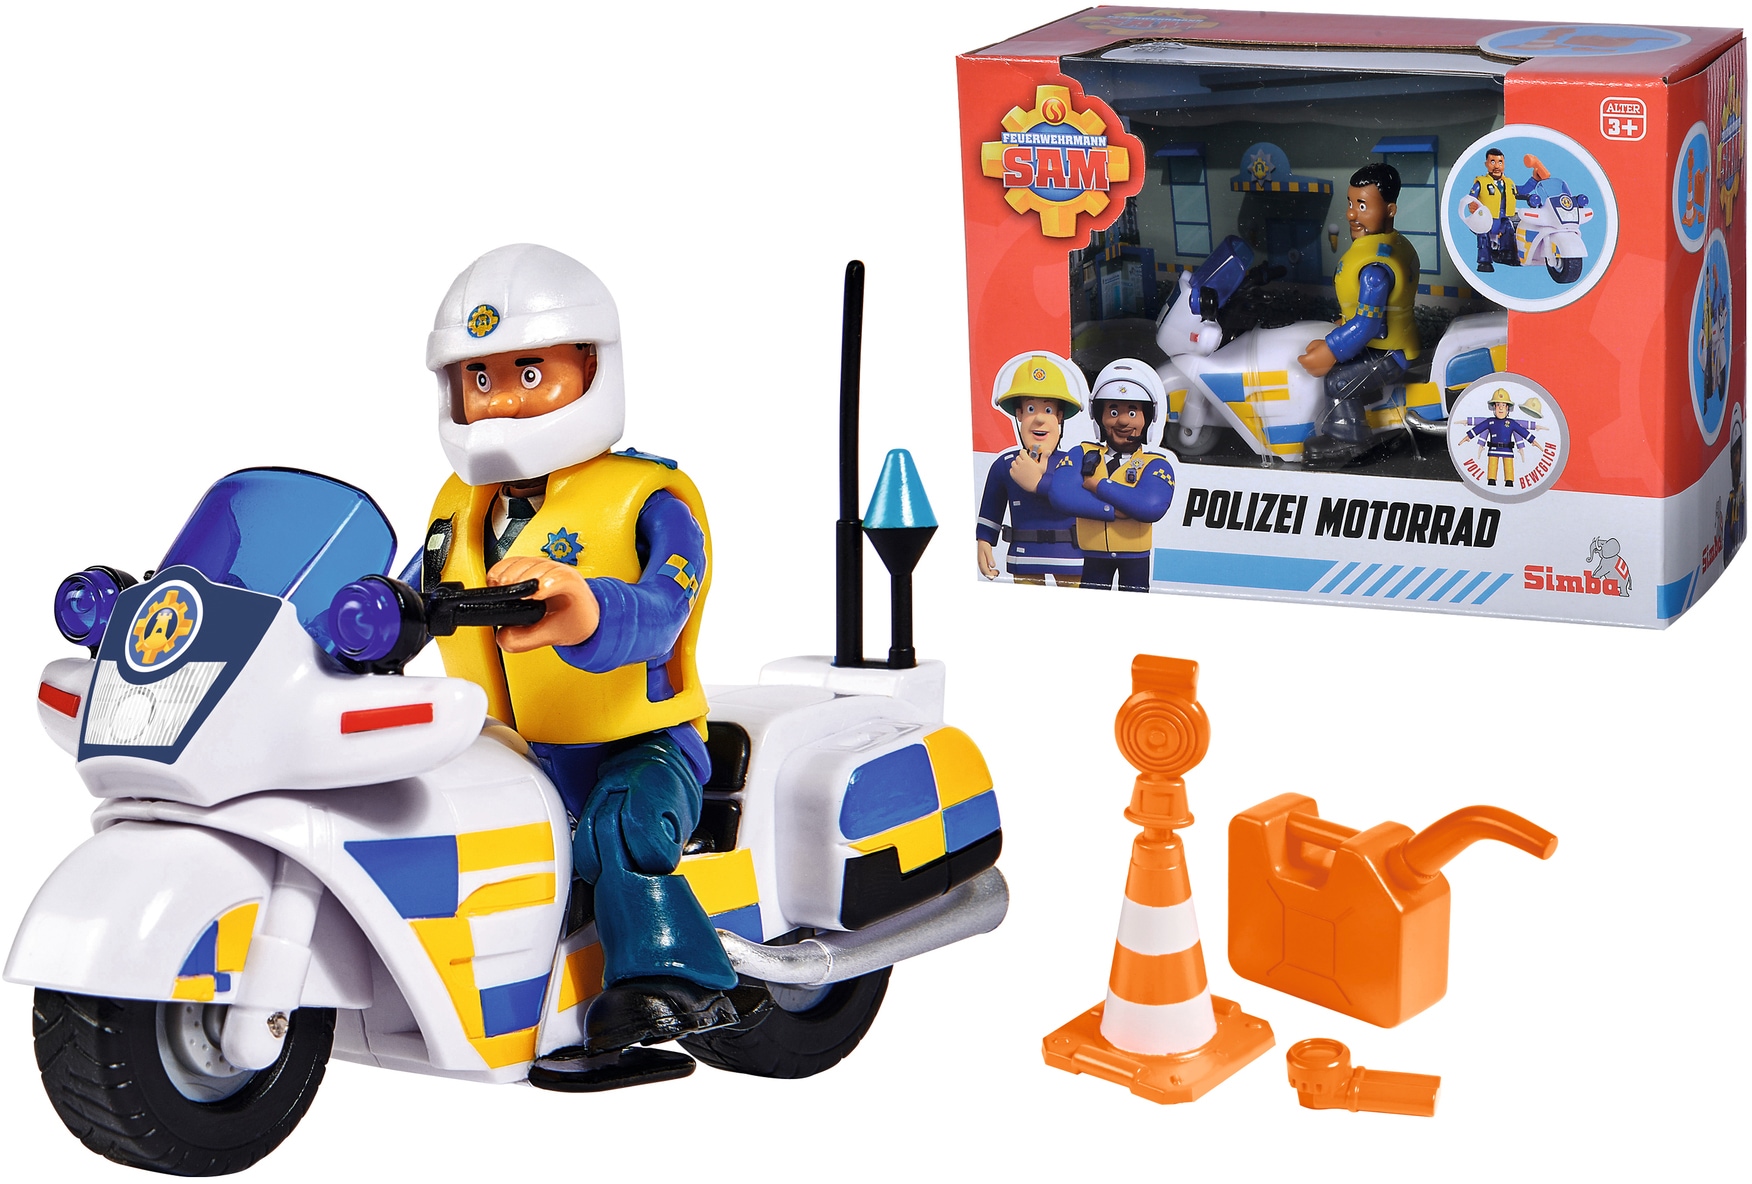 Spielzeug-Motorrad »Feuerwehrmann Sam, Polizei Motorrad mit Figur«